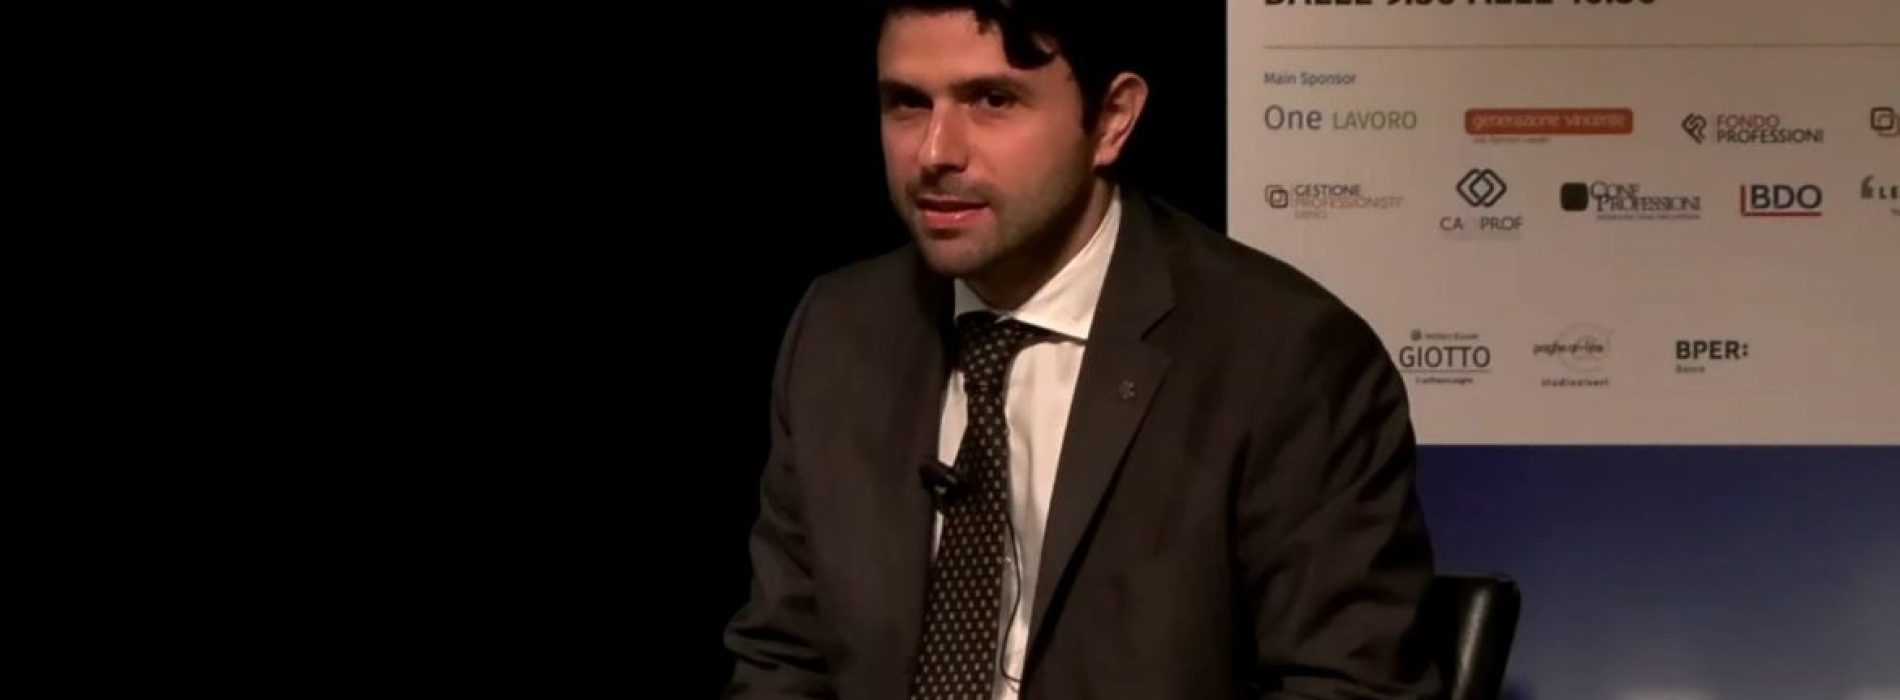 VIDEO. Forum One Lavoro, l’intervento integrale dell’AD Alfredo Amoroso